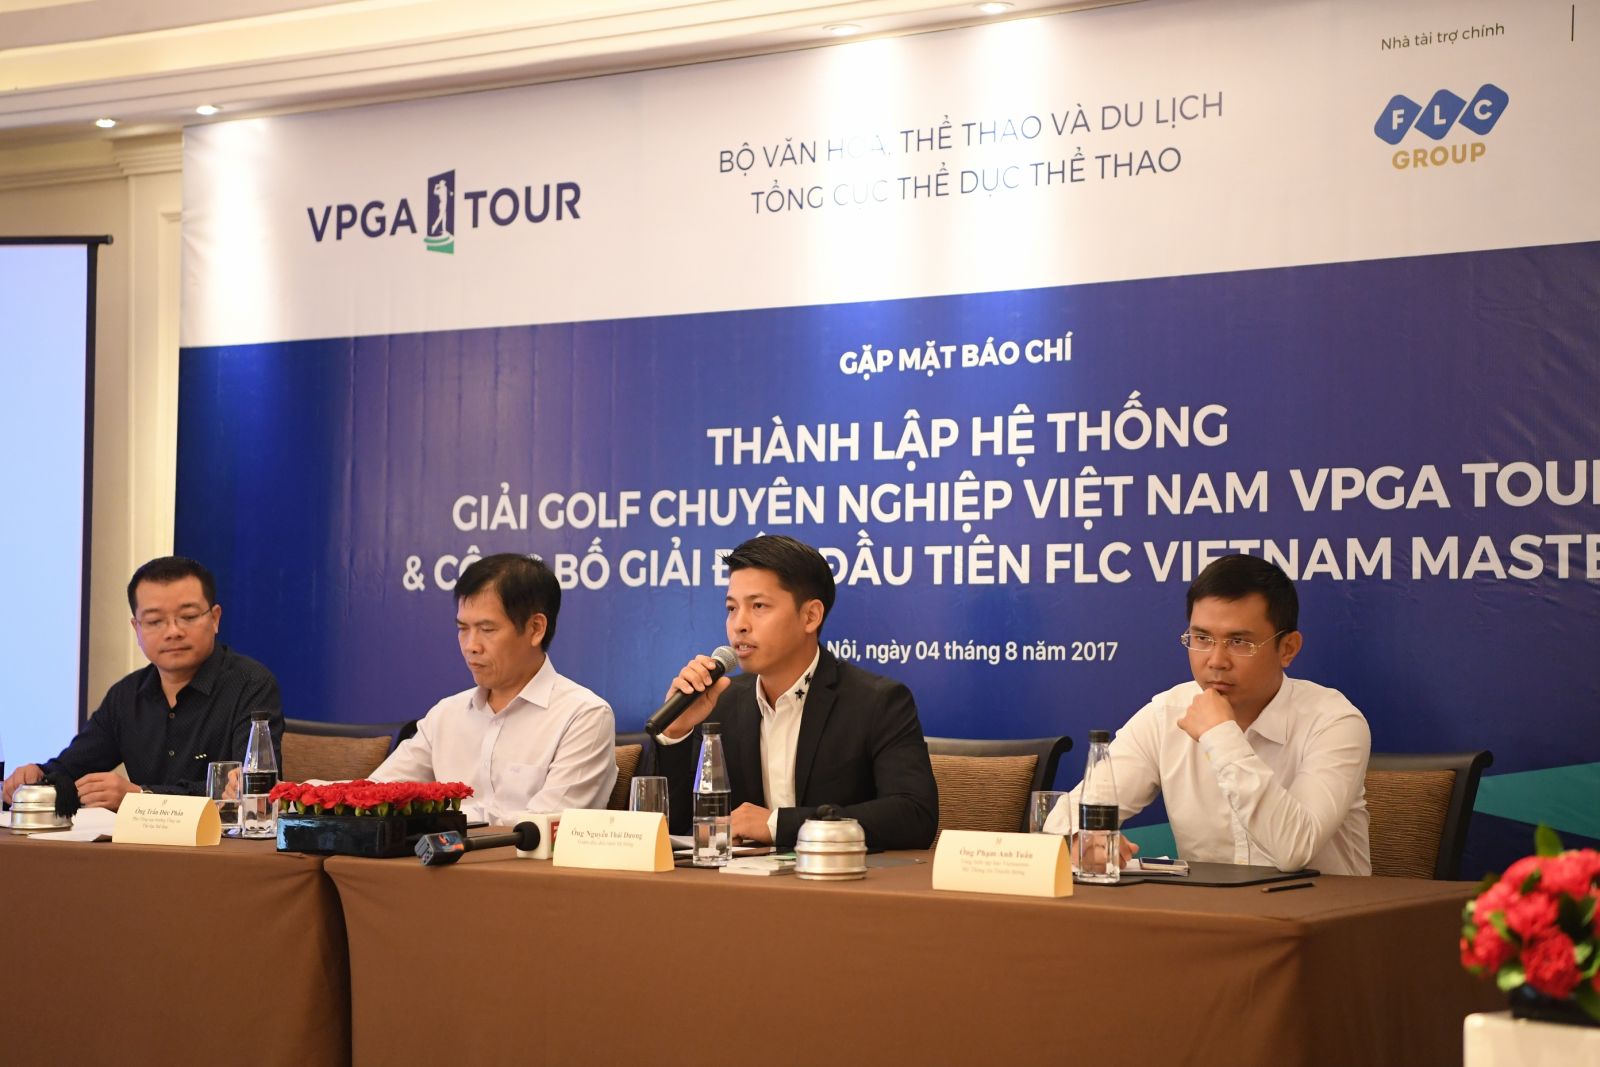 Chính thức thành lập Hệ thống giải Golf chuyên nghiệp đầu tiên ở Việt Nam: VPGA Tour